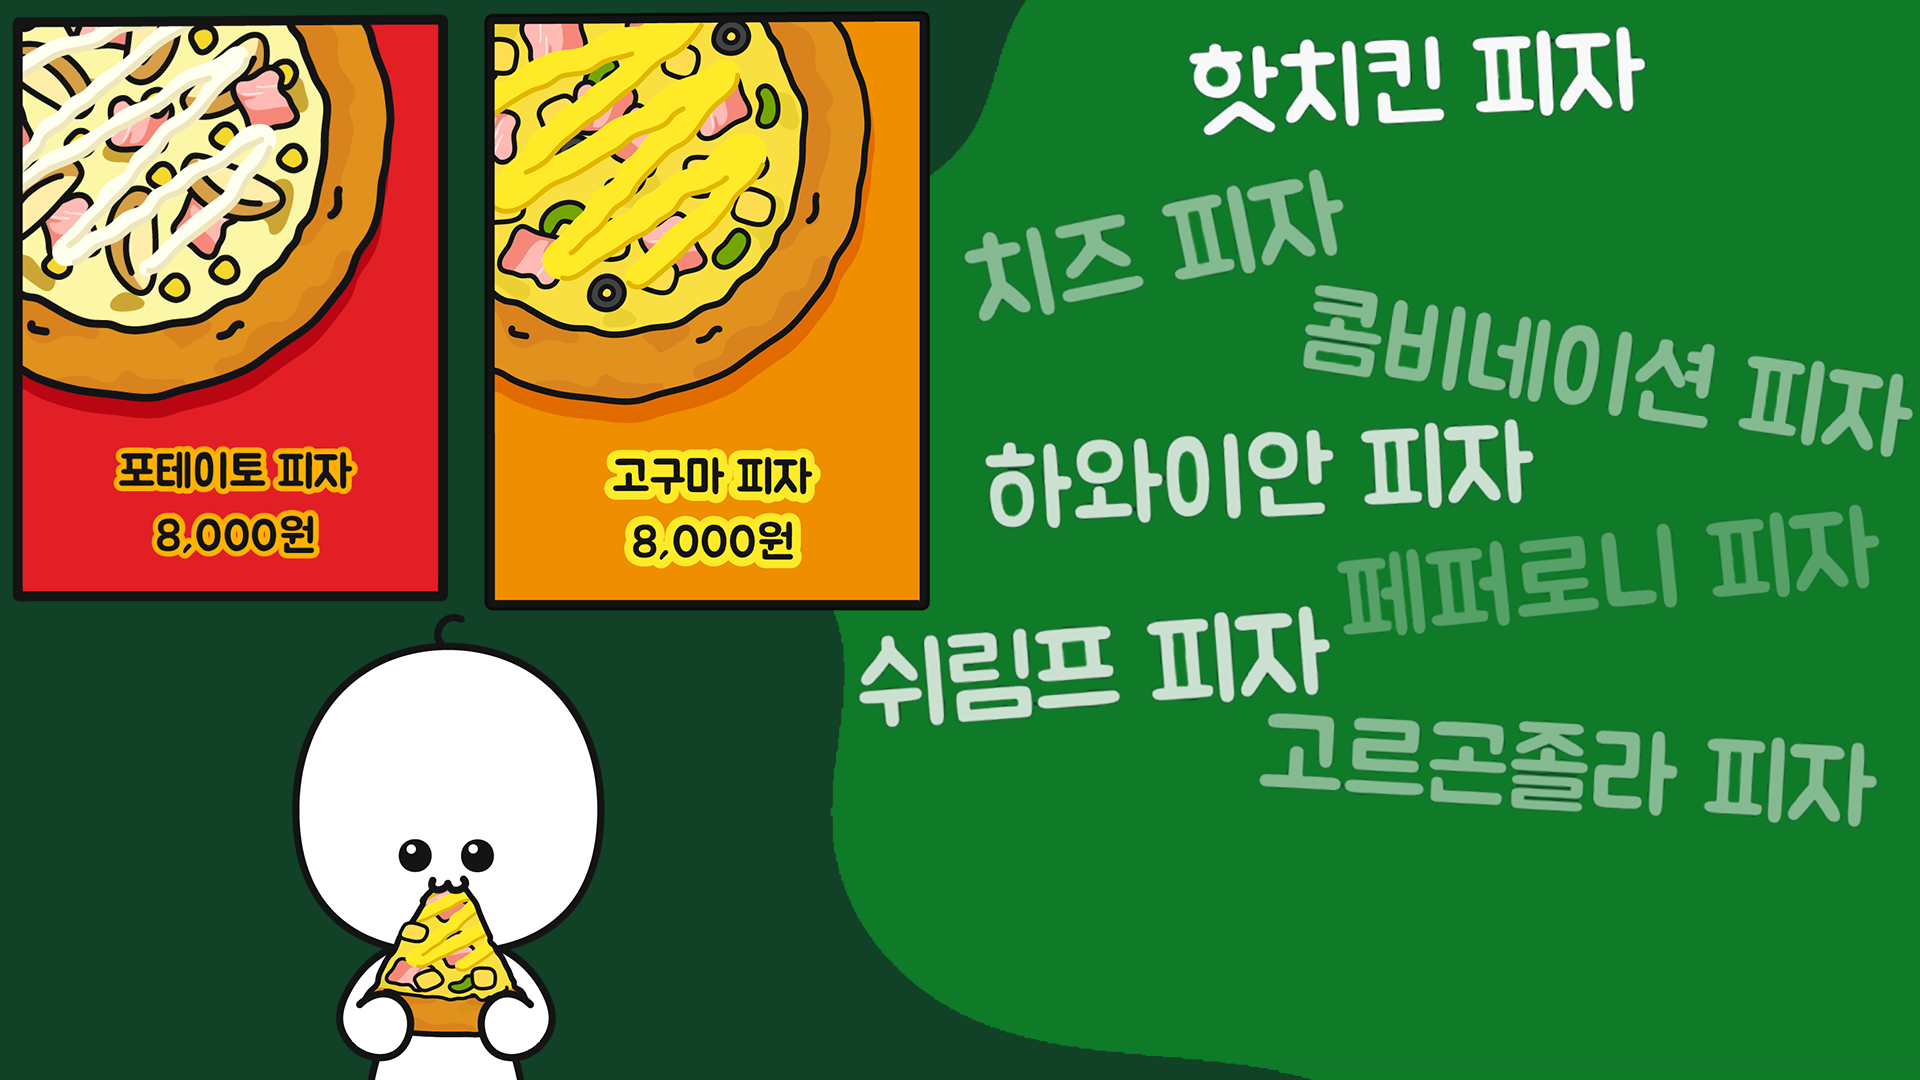 피자 메뉴명은 대부분 영어인데, 왜 고구마 피자는 한국어일까?